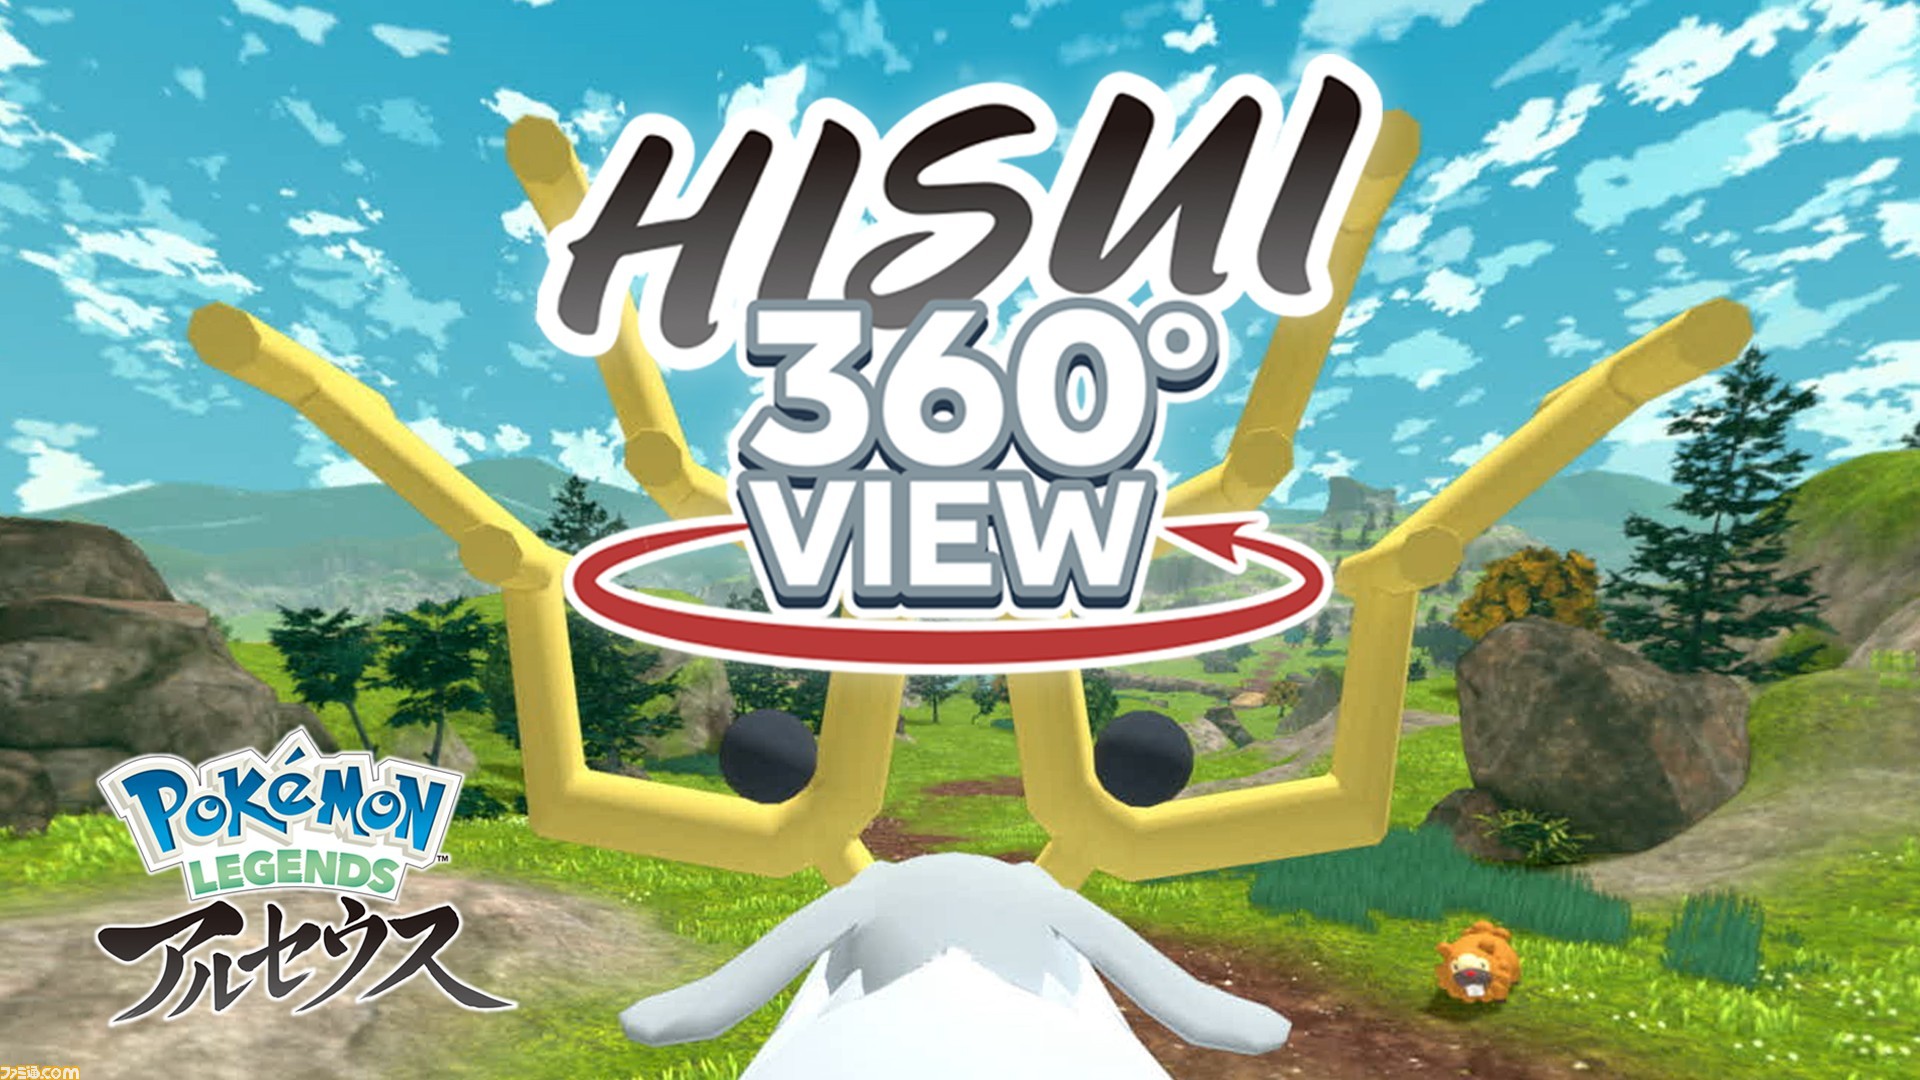 ポケモンレジェンズ アルセウス の舞台となるヒスイ地方を360 全方位で再現した動画 Hisui360 View が公開 ゲーム エンタメ最新情報のファミ通 Com